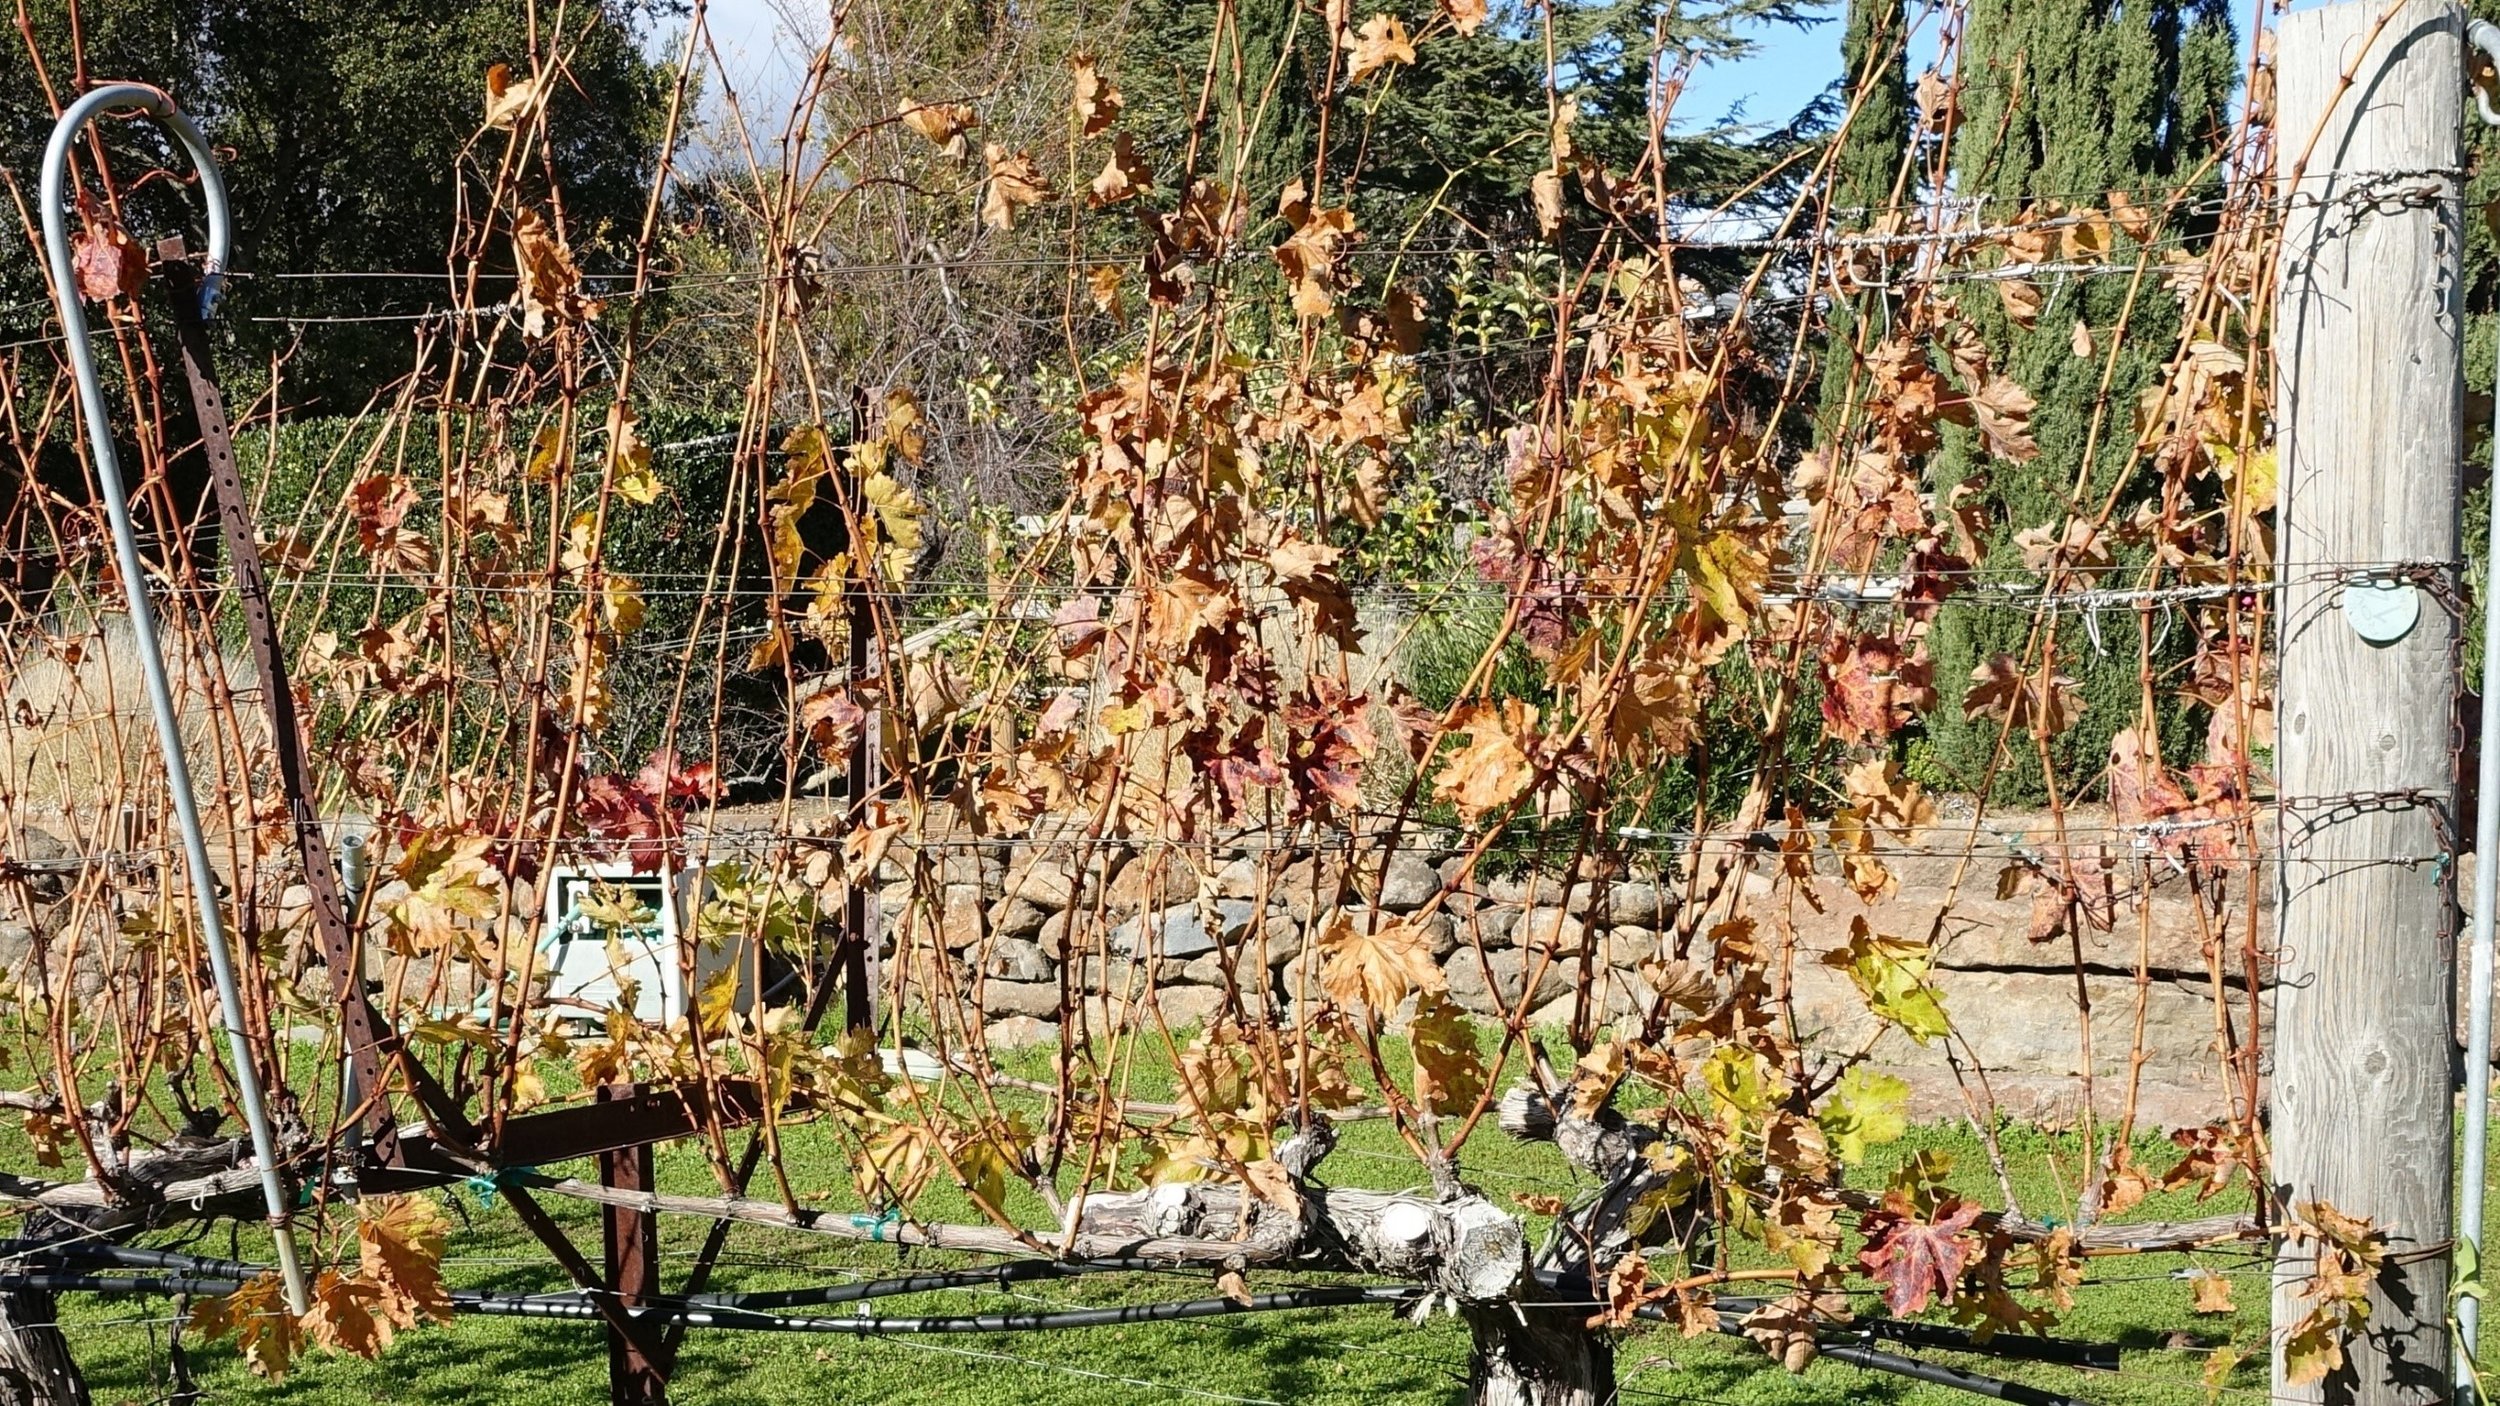 14 December: Leaves have fallen off